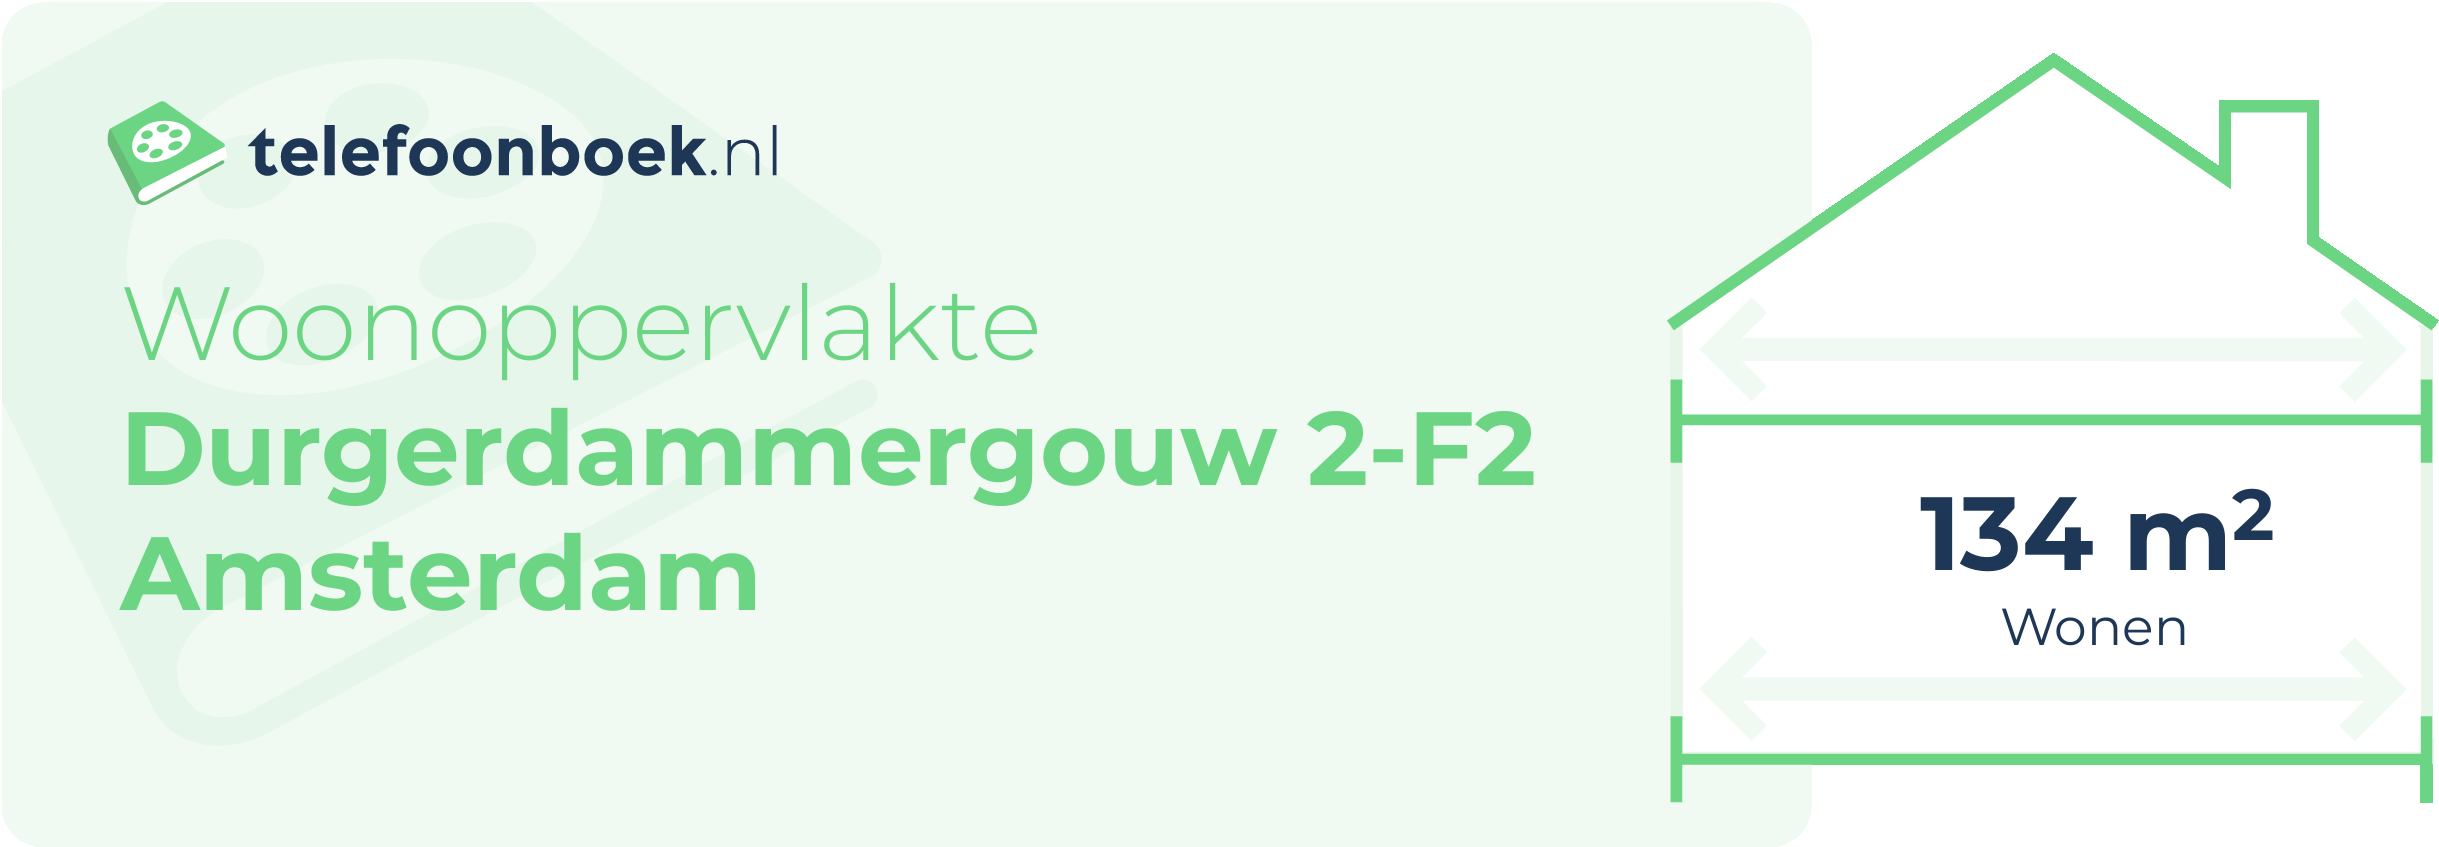 Woonoppervlakte Durgerdammergouw 2-F2 Amsterdam